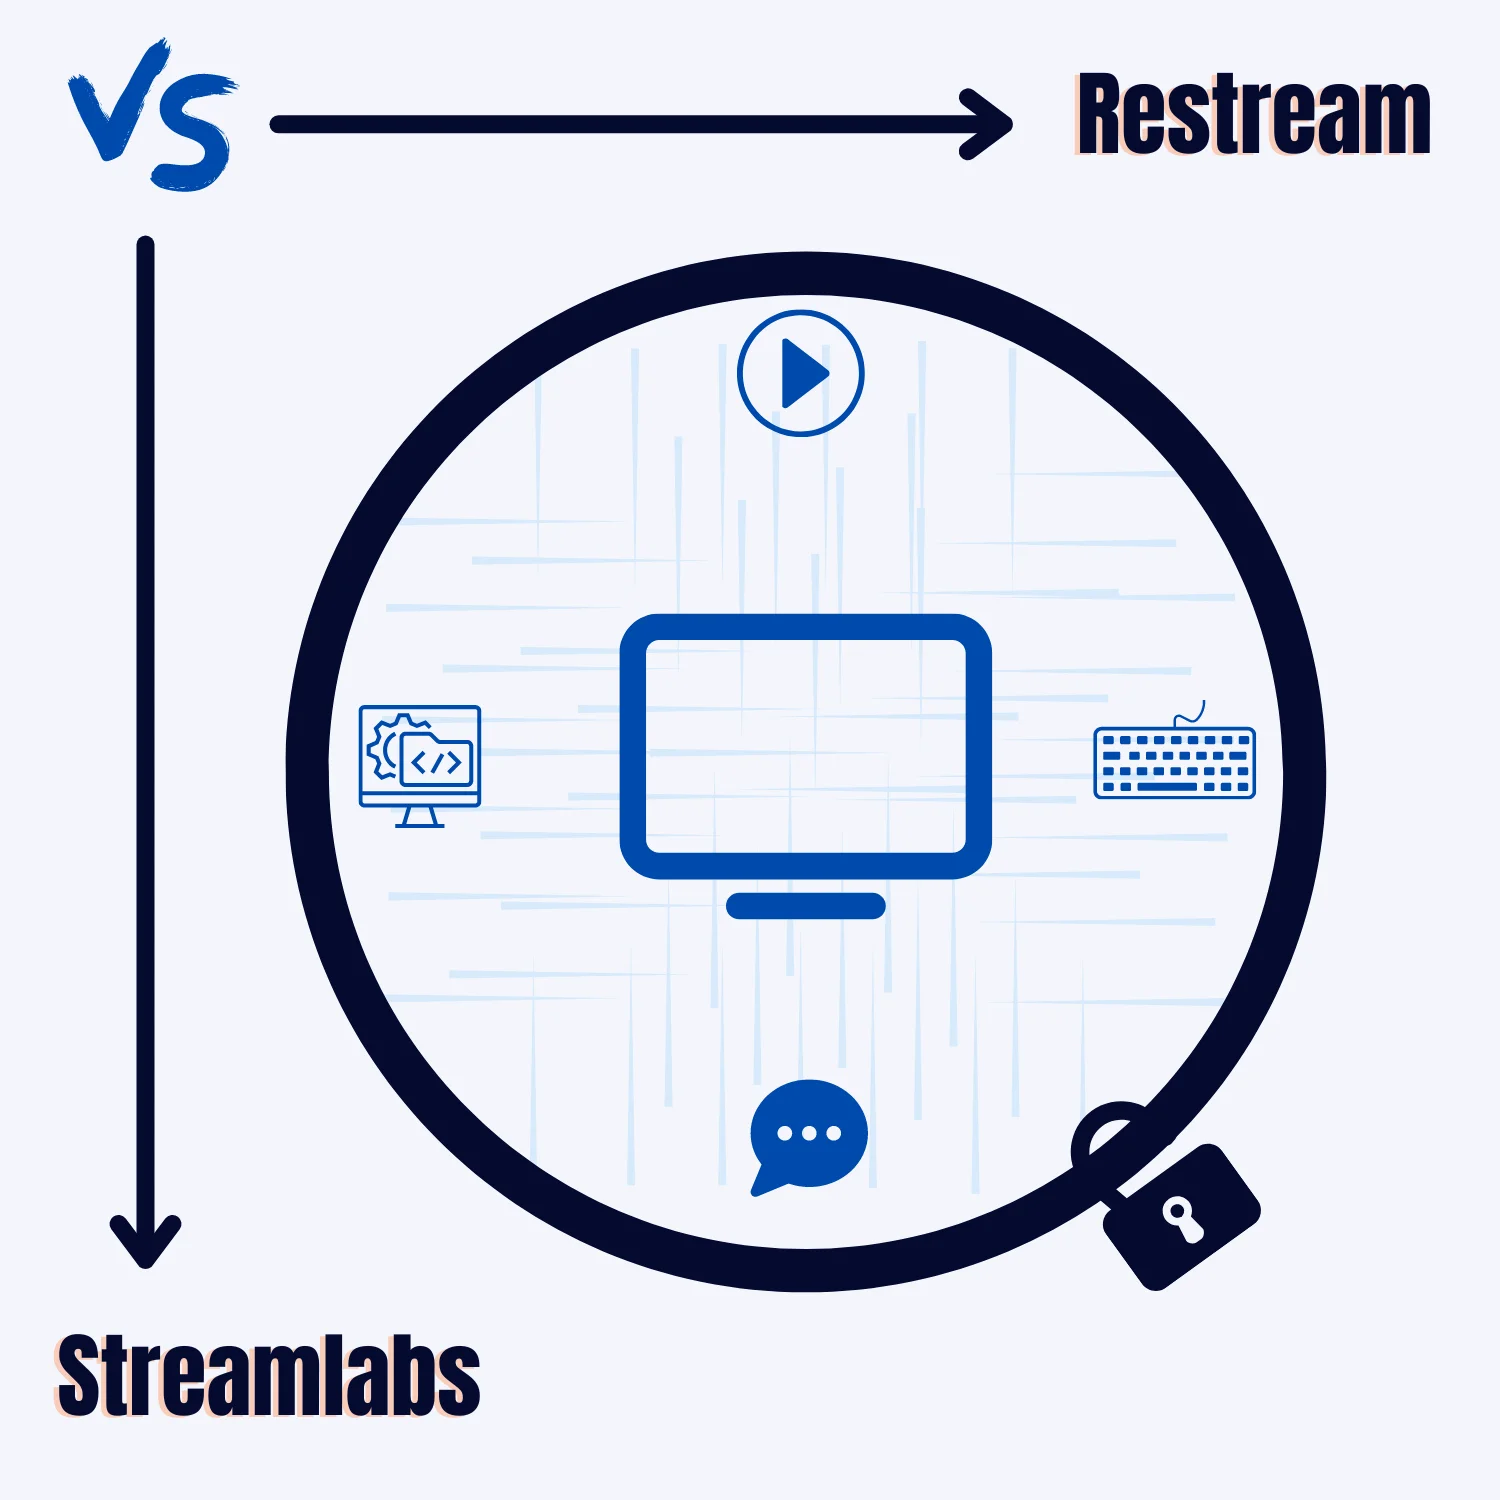 Restream vs. Streamlabs